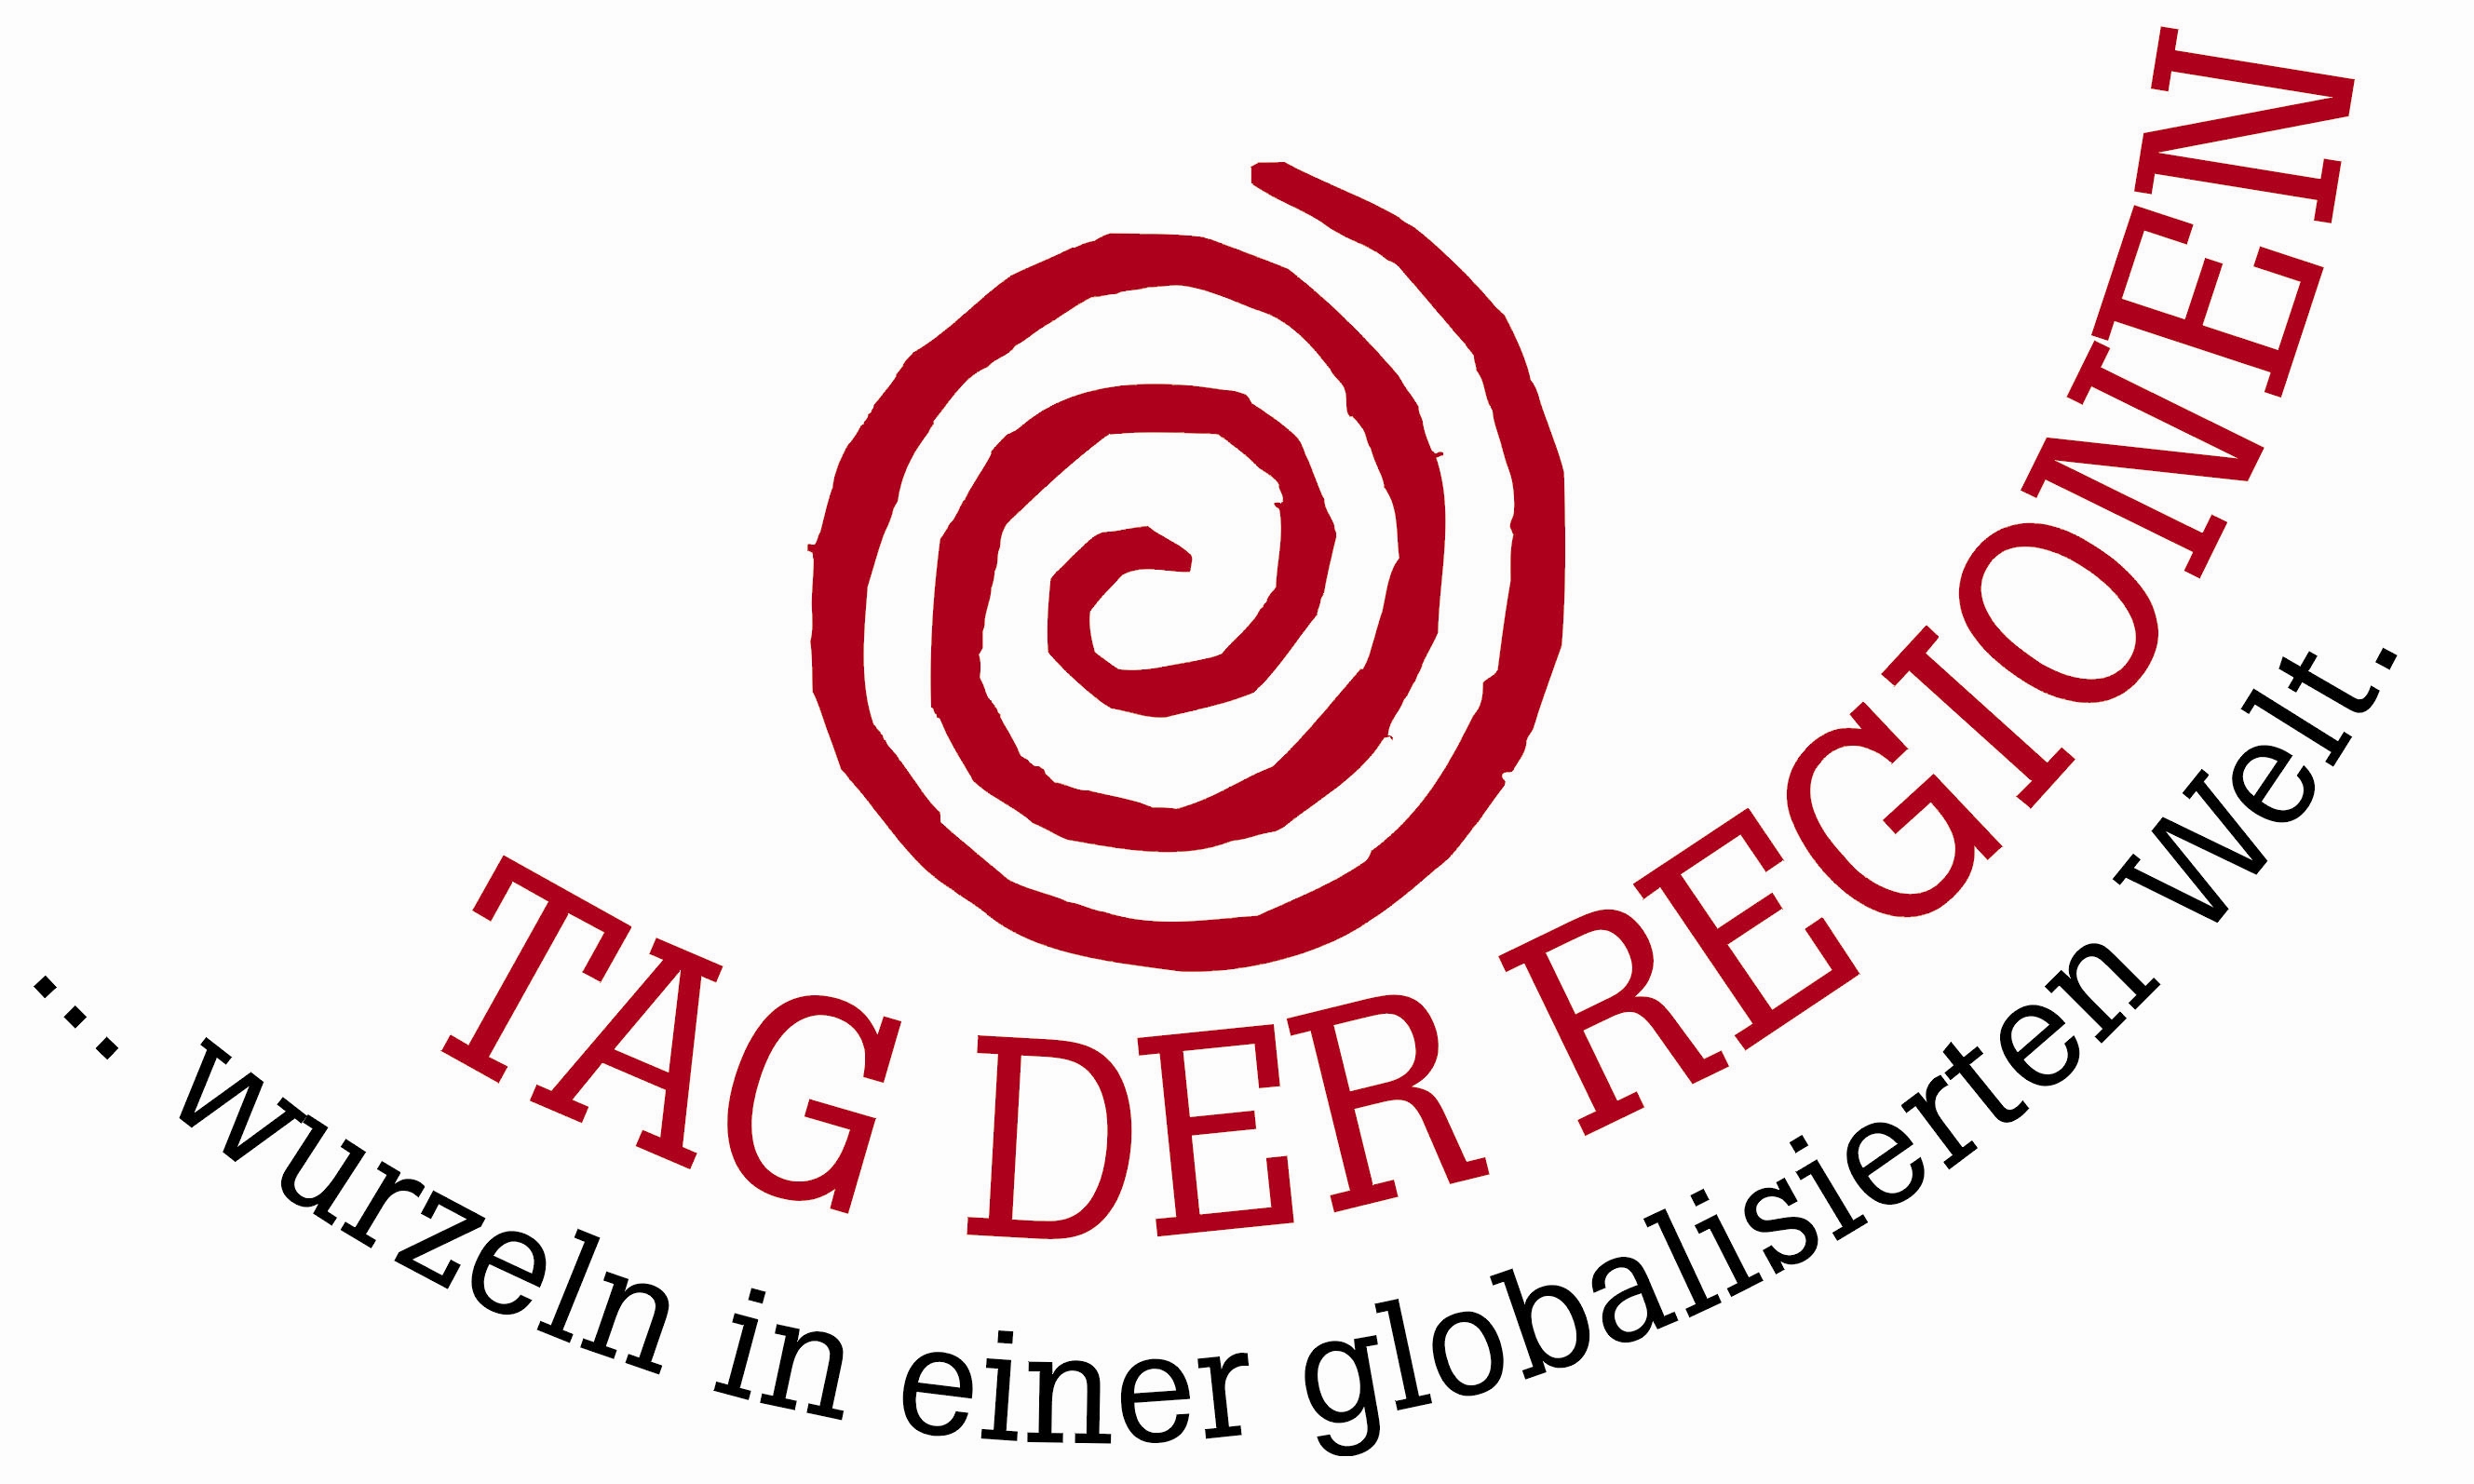 Logo Tag der Regionen